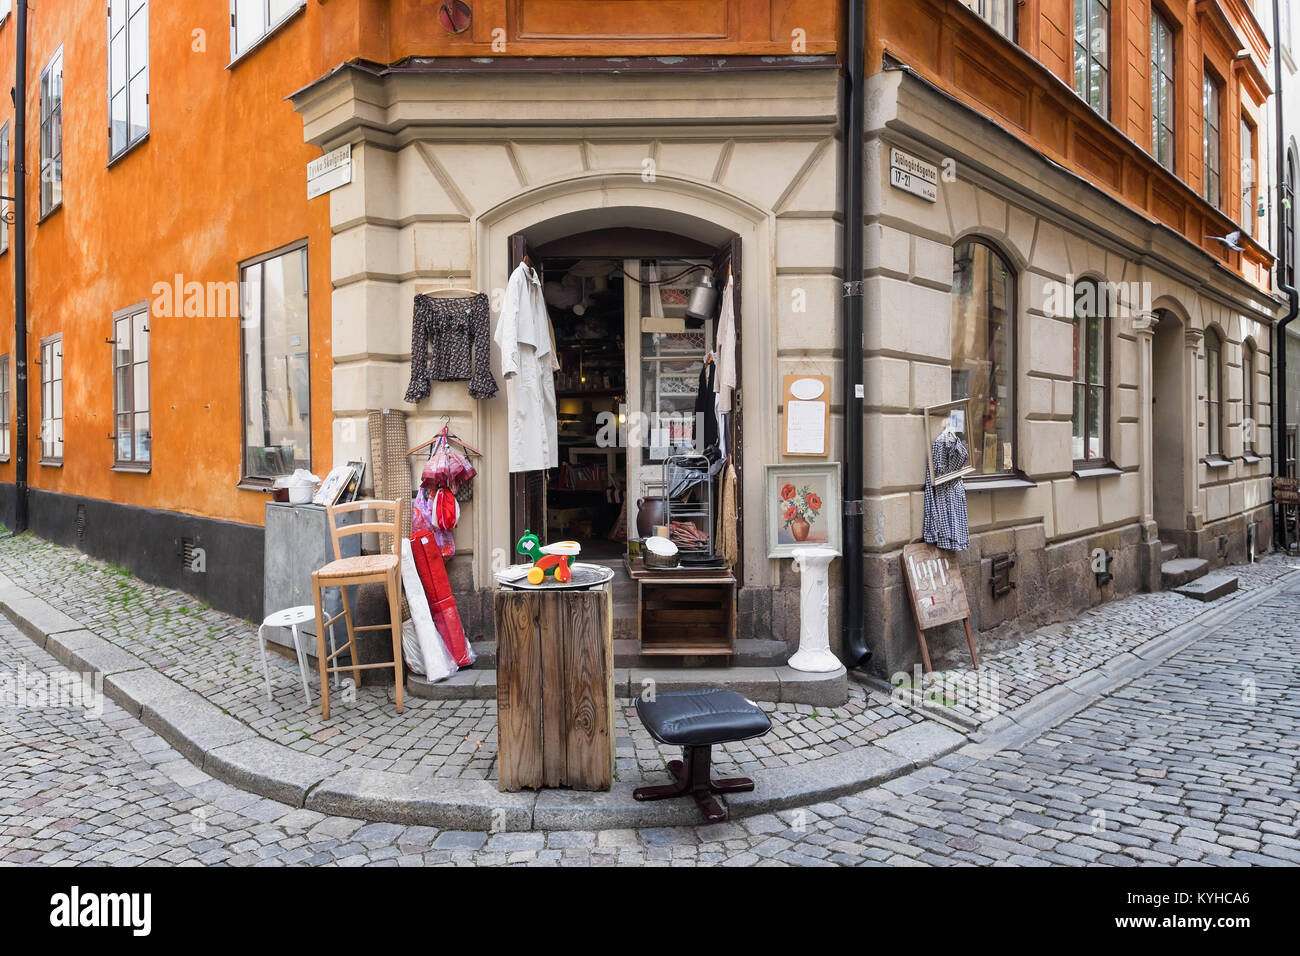 Boutique de Stockholm à vendre des vêtements vintage et des articles ménagers affiche sur le trottoir à l'extérieur. Situé dans la pittoresque ville de Gamla Stan, ou la vieille ville Banque D'Images